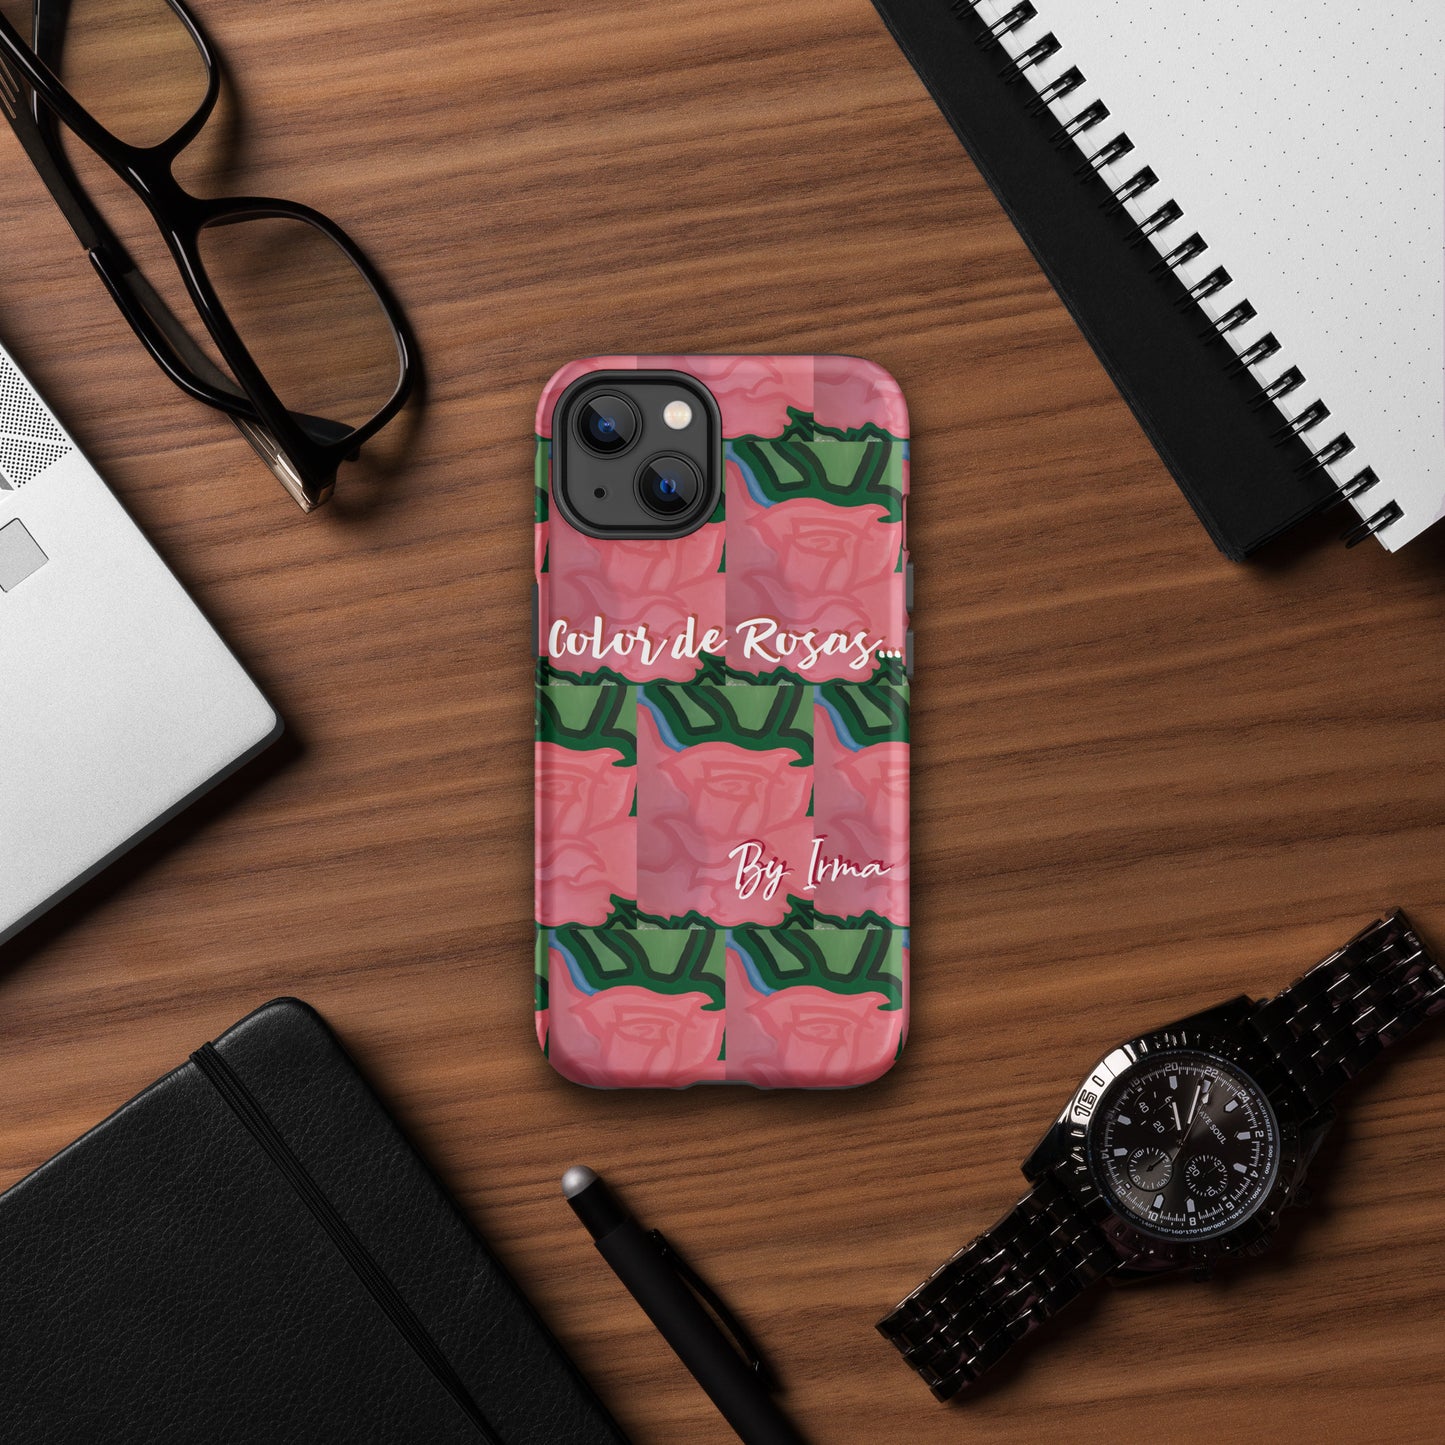 Color de Rosas by Irma Tough Case for iPhone®